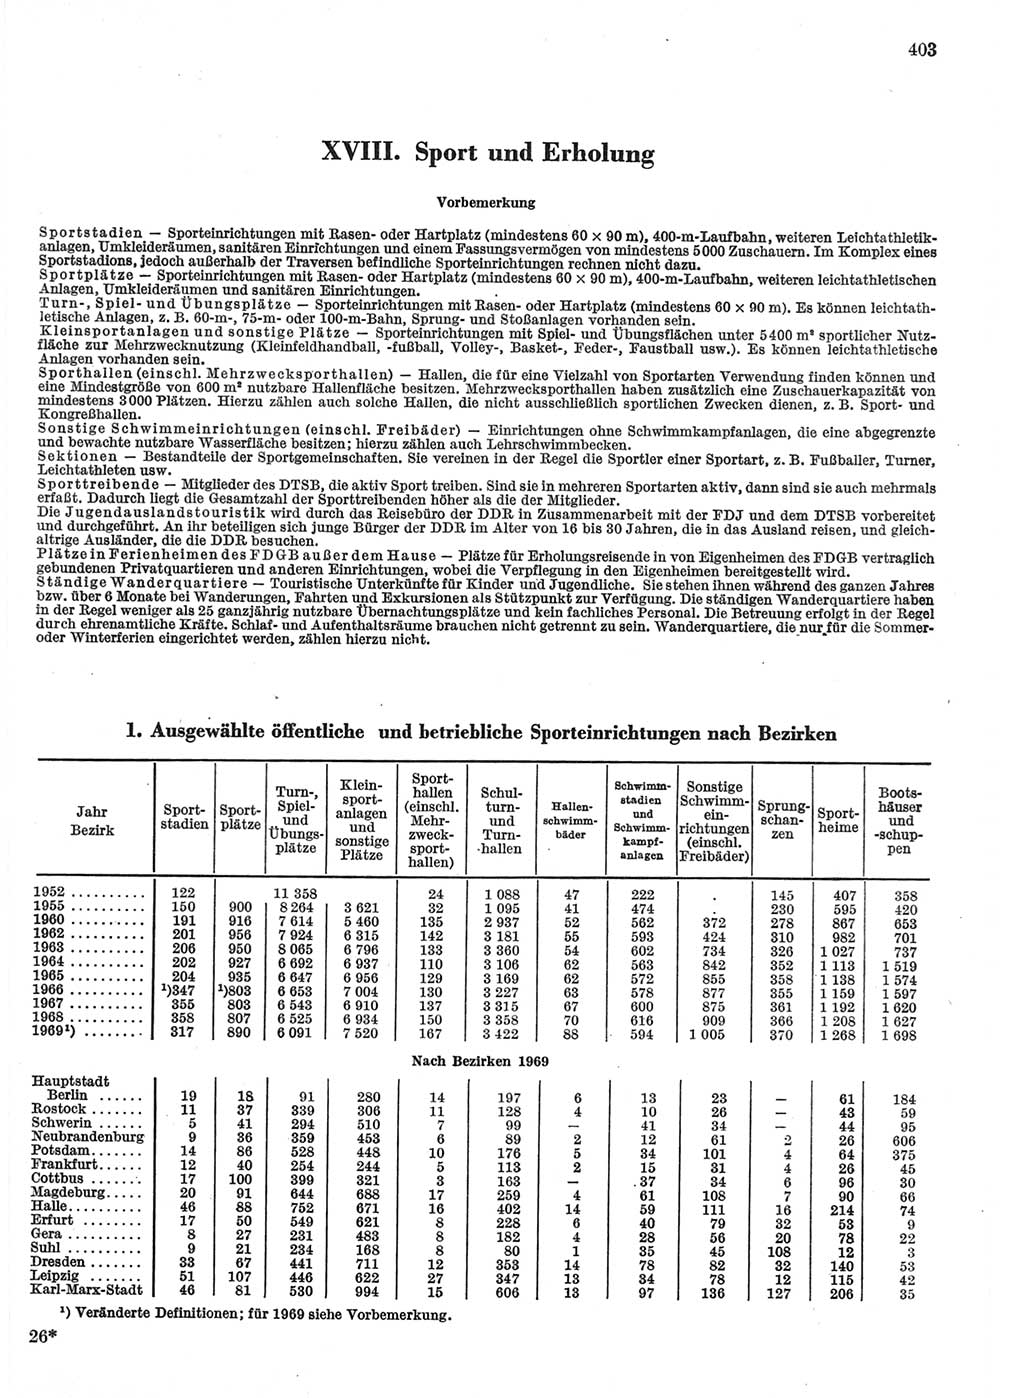 Statistisches Jahrbuch der Deutschen Demokratischen Republik (DDR) 1970, Seite 403 (Stat. Jb. DDR 1970, S. 403)